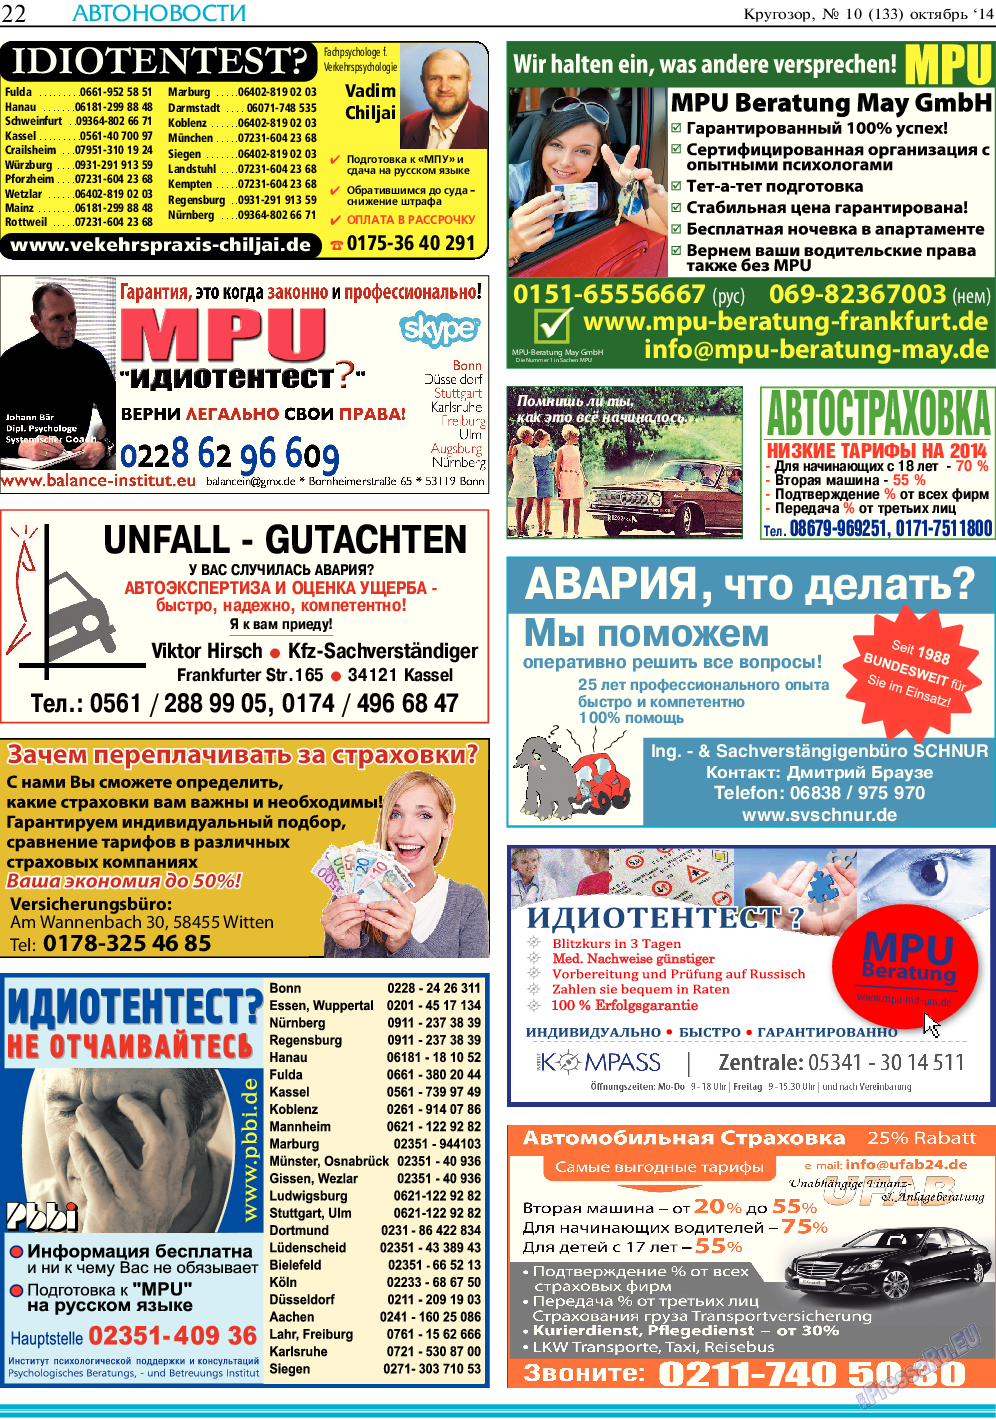 Кругозор, газета. 2014 №10 стр.22